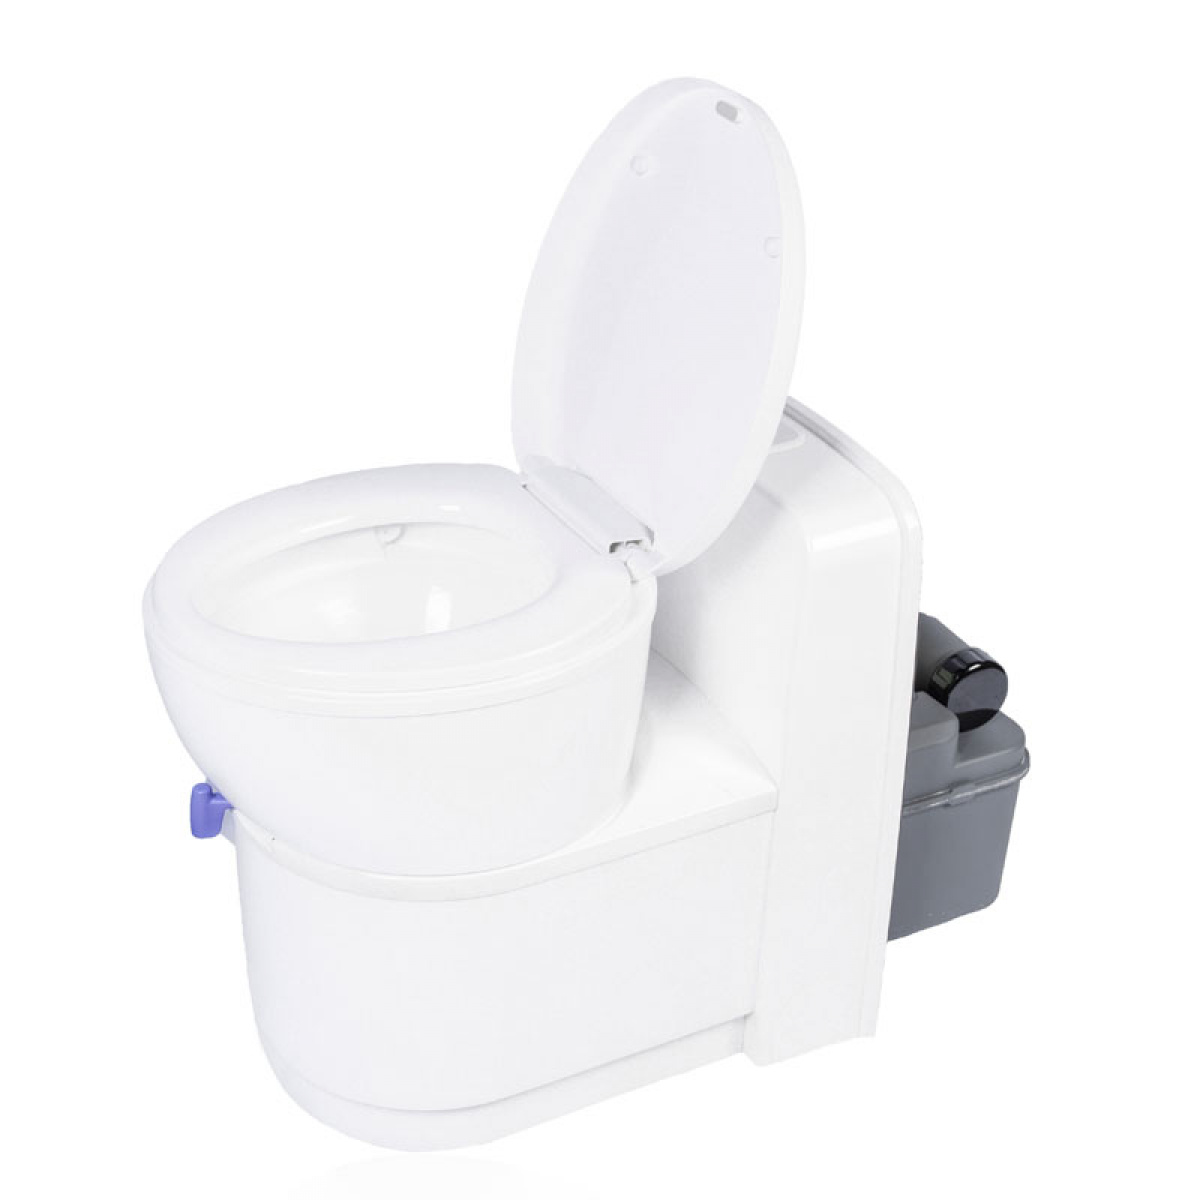 Kassettetoilet komplet med dør & tank i gruppen Vand & Sanitet / Toilet / Toiletter / Kassettetoiletter hos Campmarket (79452)